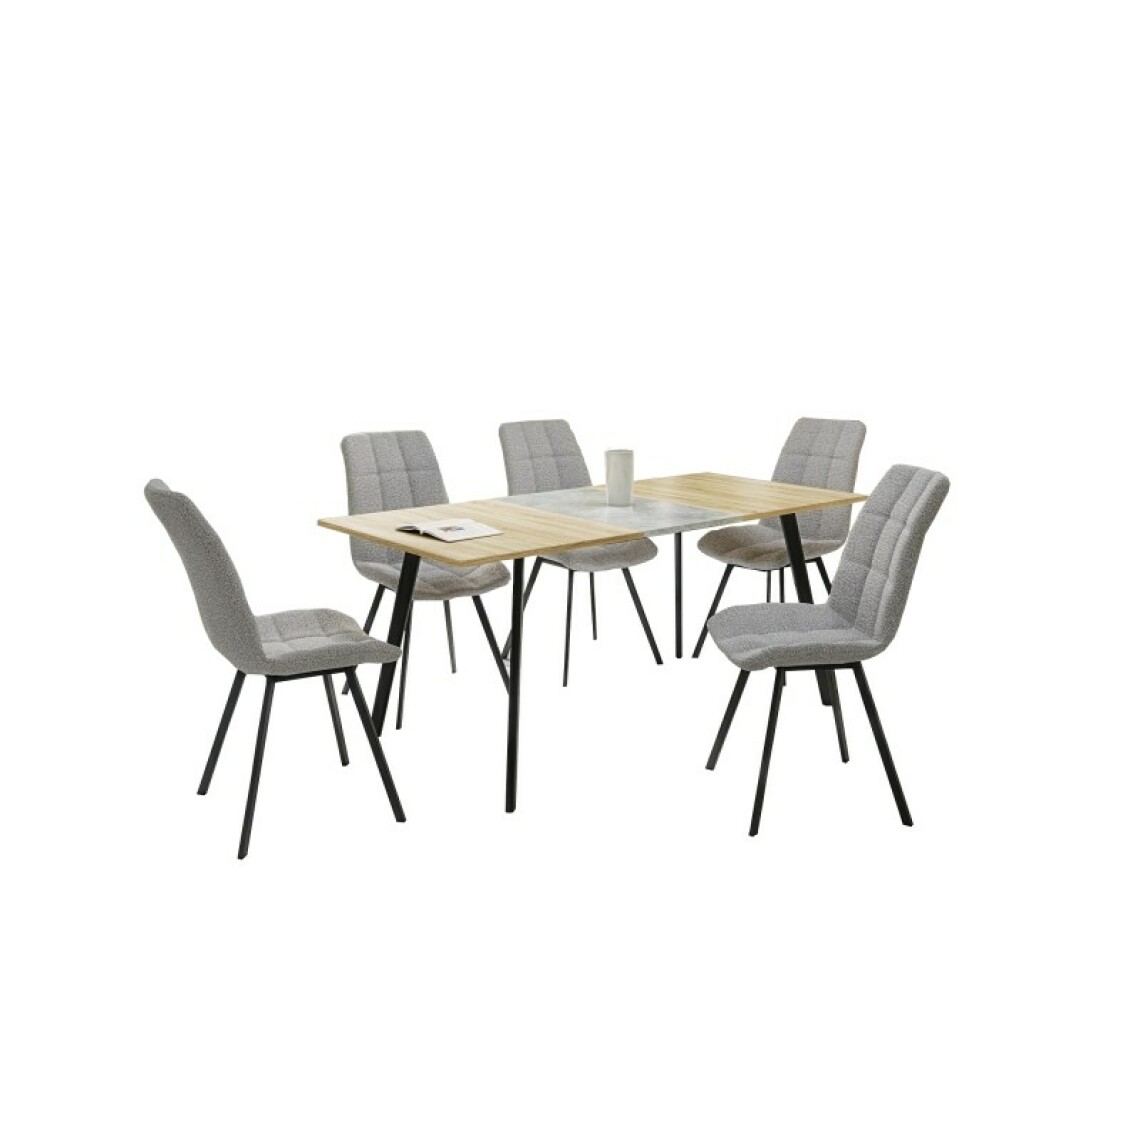 Carellia - Table à manger extensible rectangulaire 120-160 cm x 80 cm x 76 cm - Chêne sonoma/Gris - Tables à manger